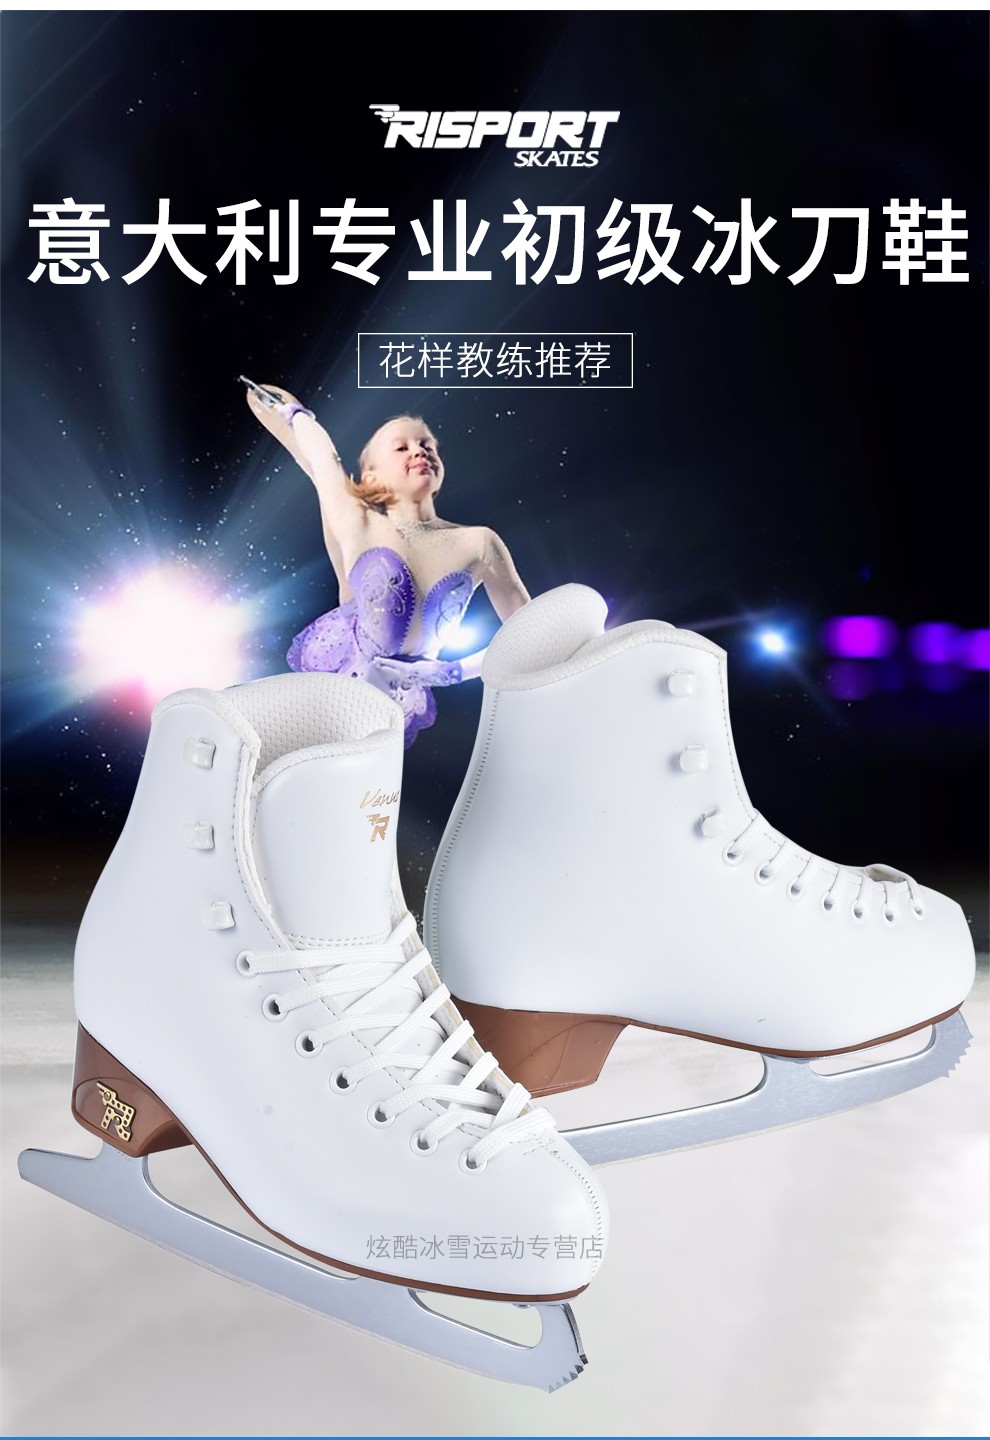 冰上运动意大利品牌risportvenus花样滑冰鞋初学者儿童女专业冰鞋花样